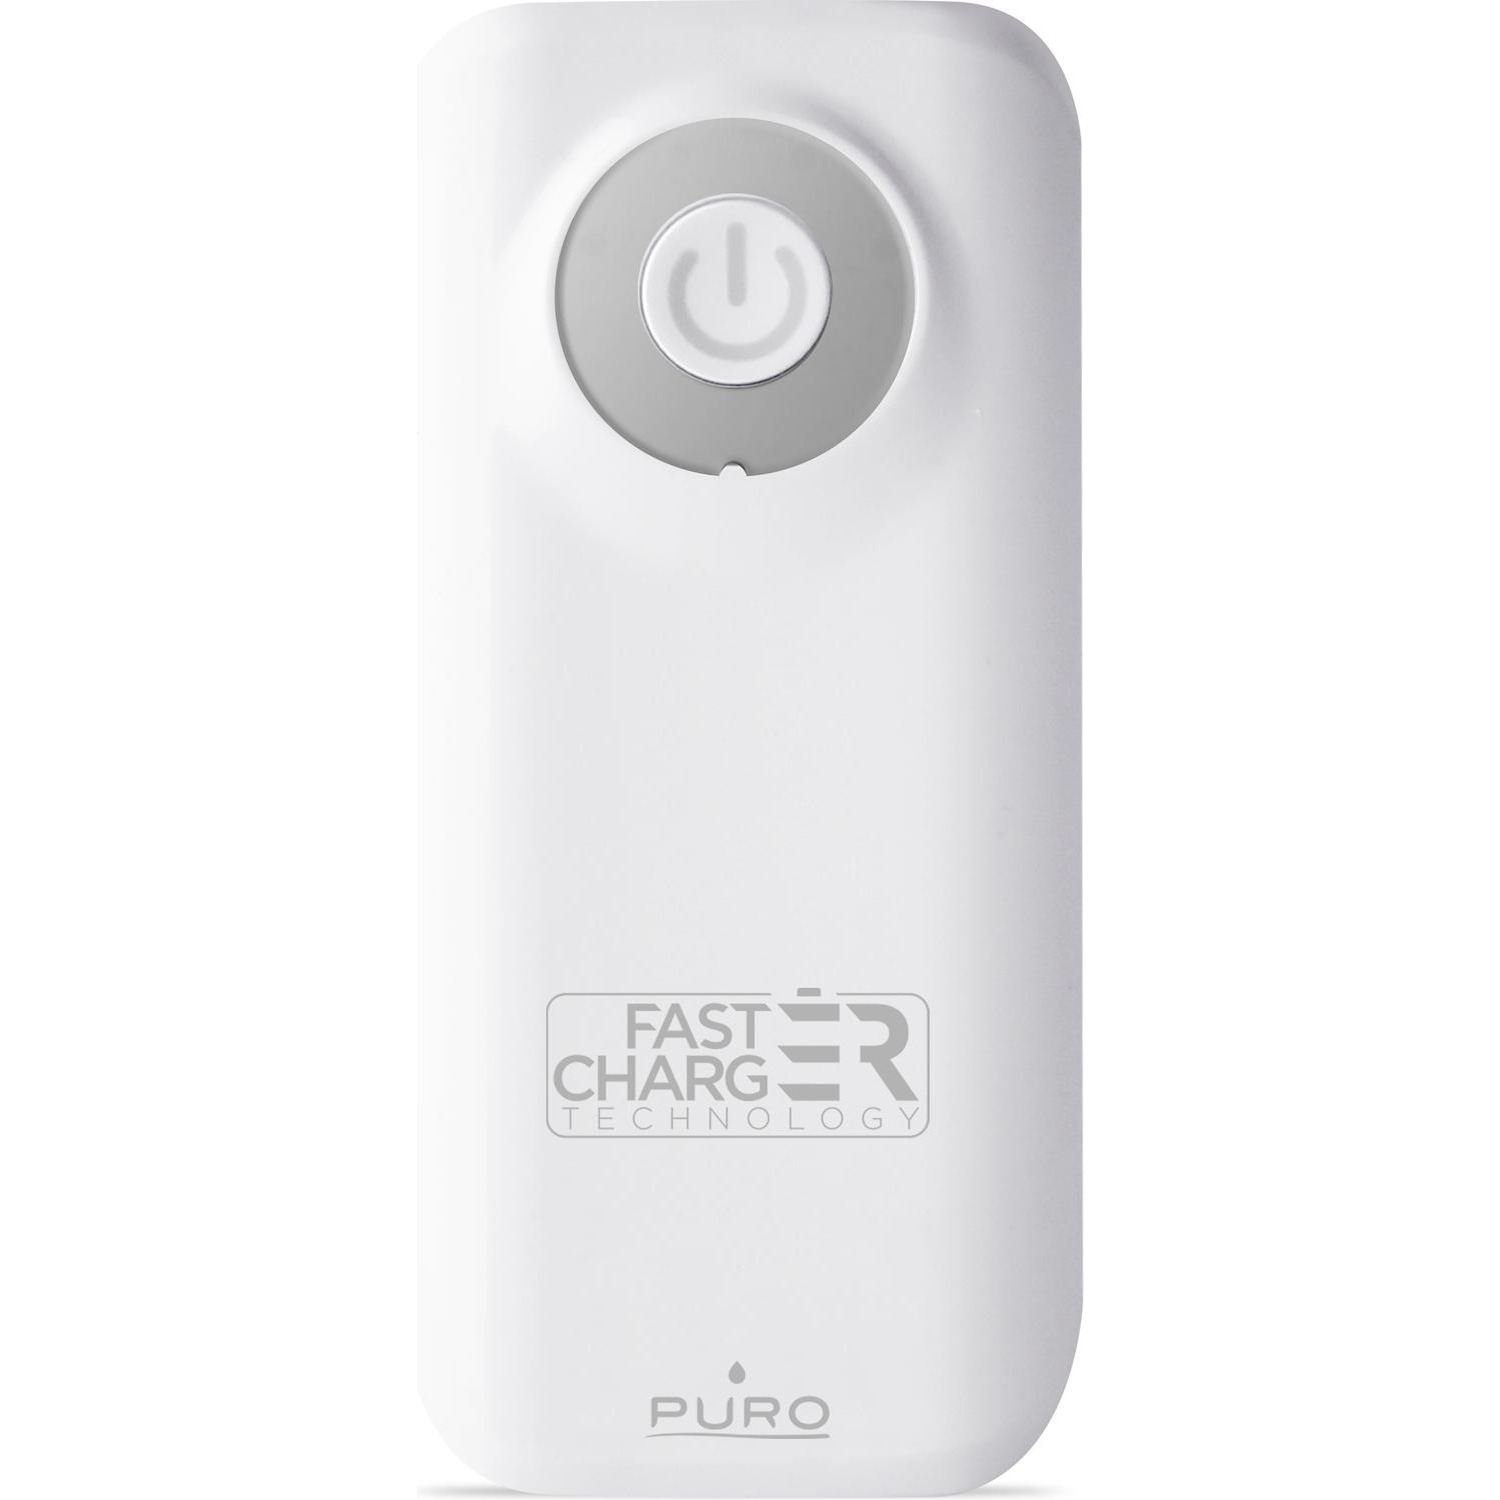 Immagine per Powerbank Puro 4000 mAh white fast charger        universale 2 USB da DIMOStore